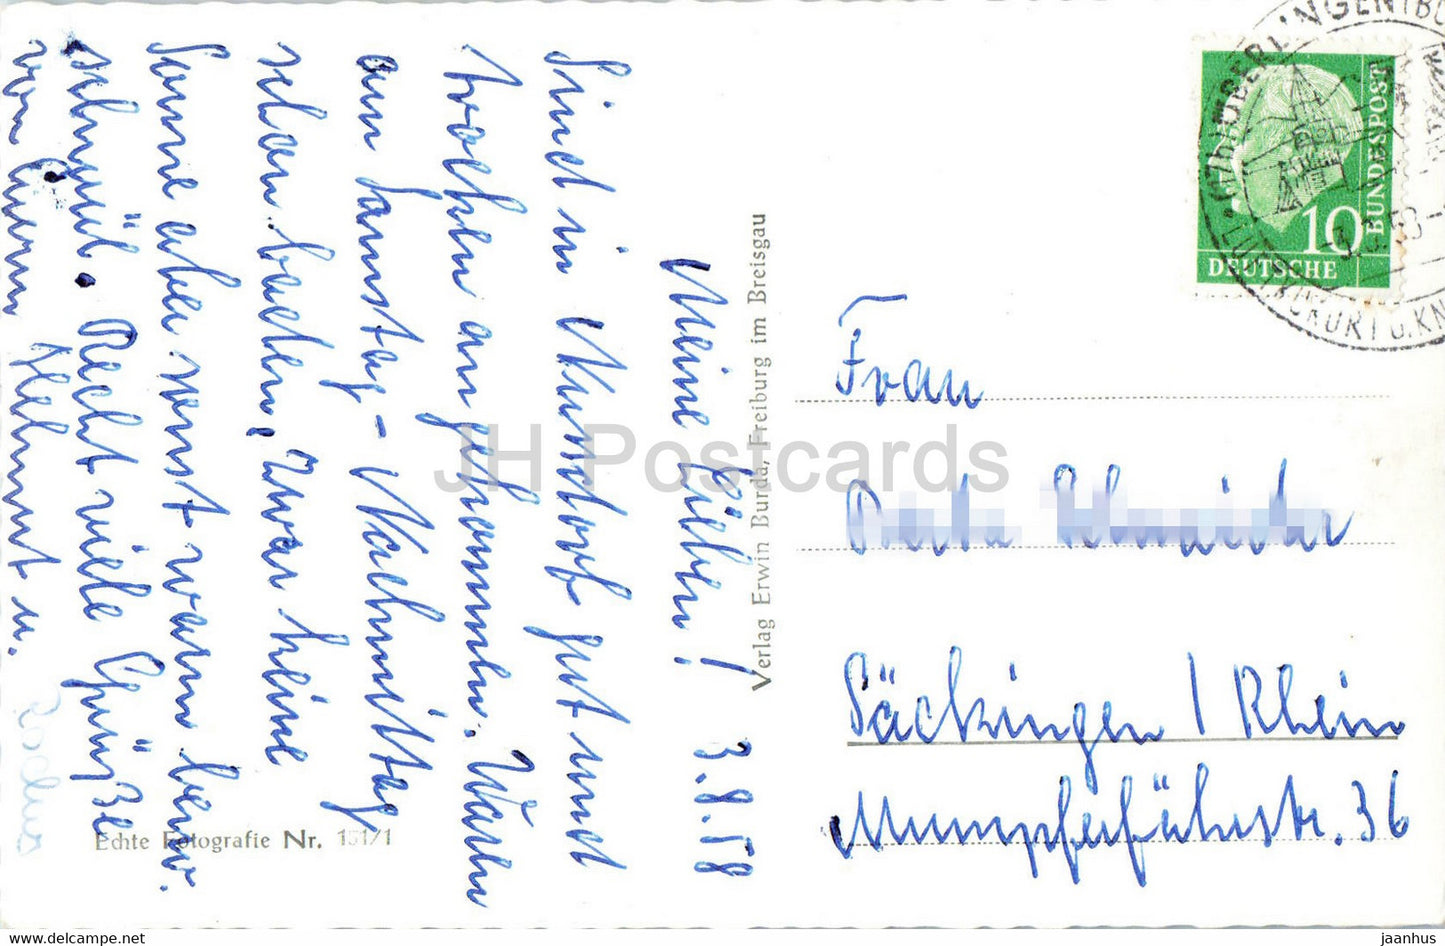 Nussdorf - Bodensee - mit Schweizer Alpen - alte Postkarte - 1958 - Deutschland - gebraucht